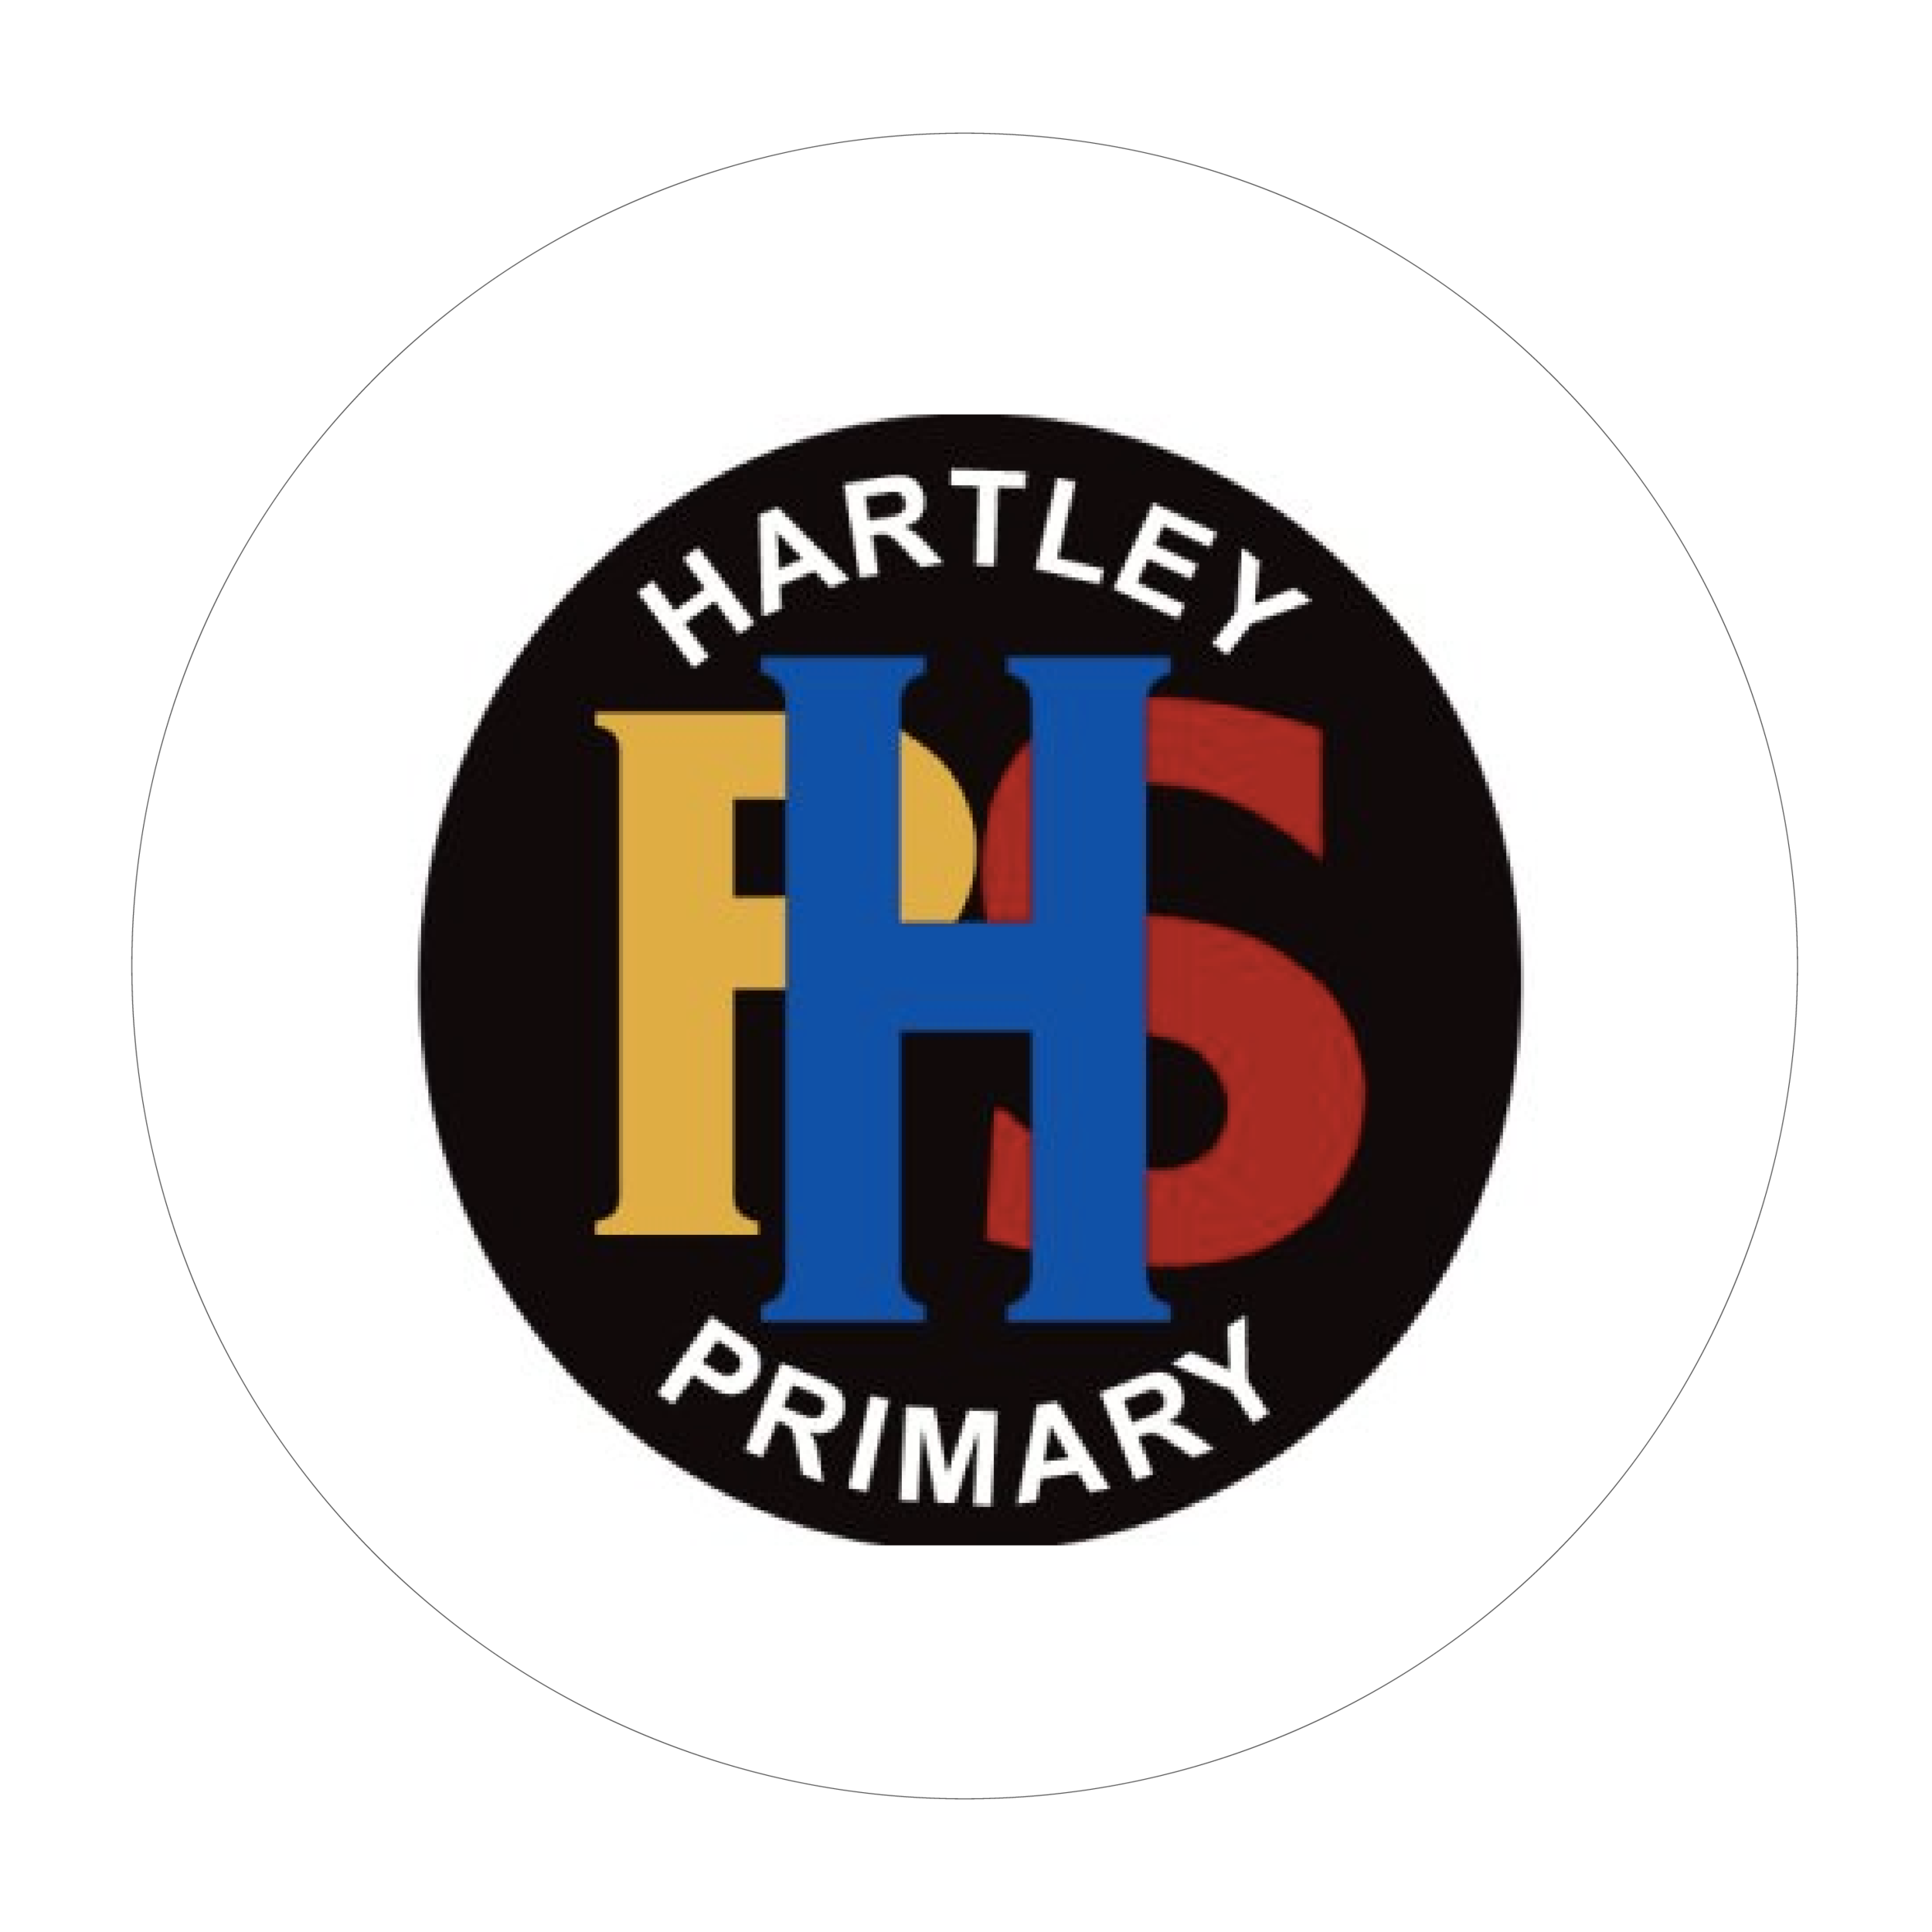 Hartley Primary School